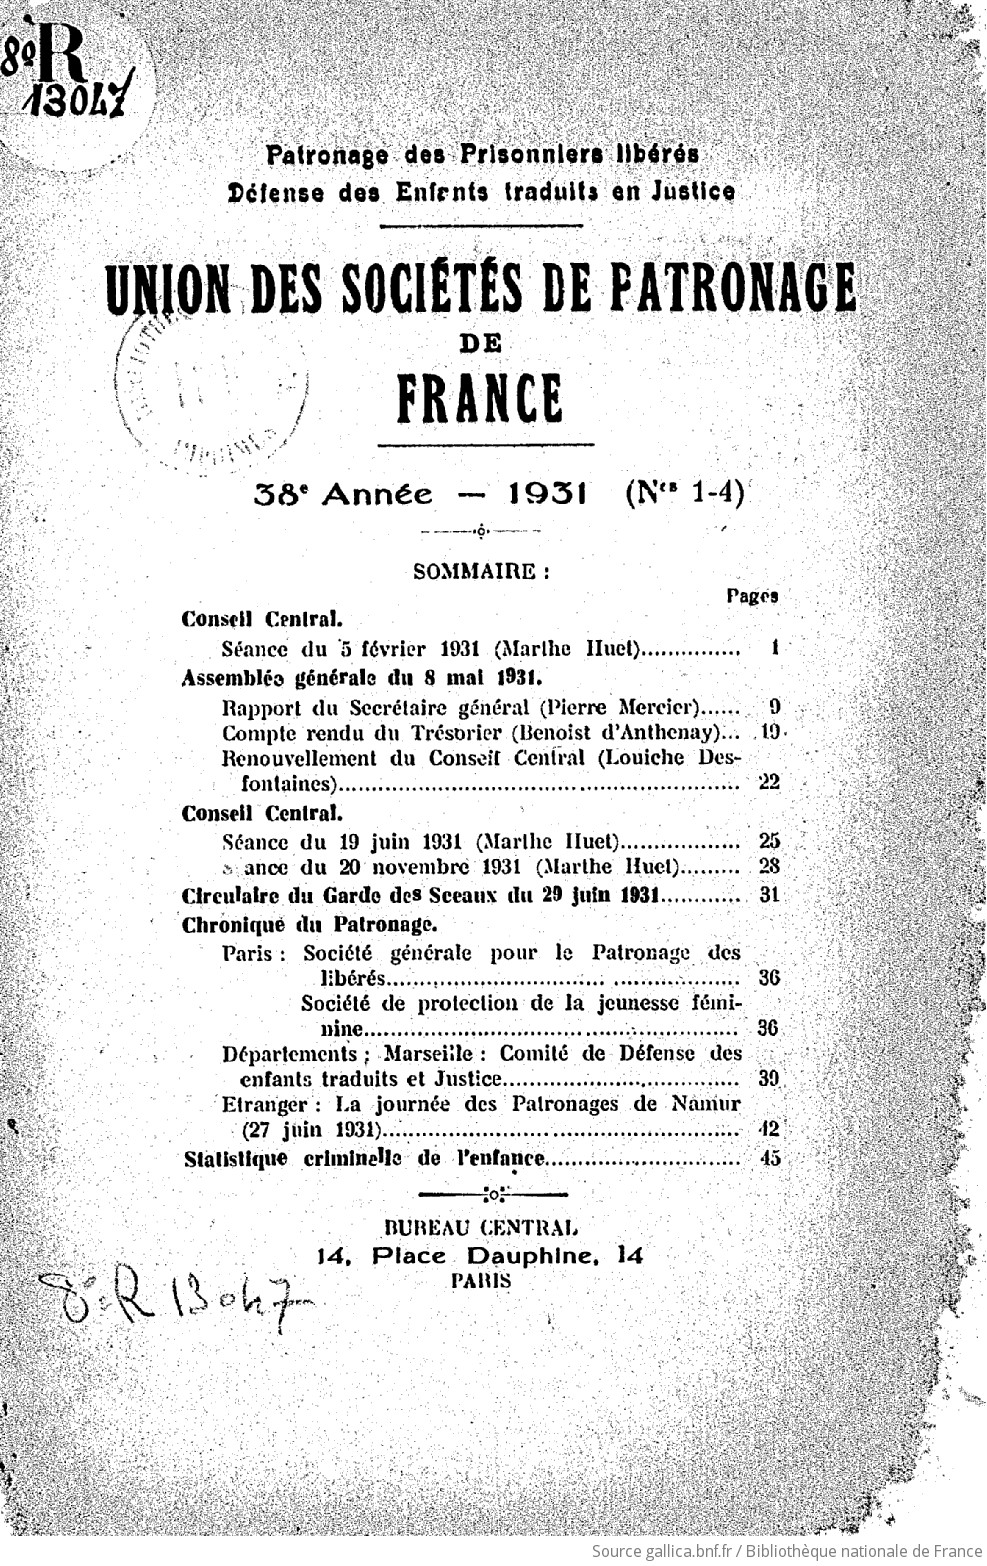 Bulletin de l'Union des sociétés de patronage de France